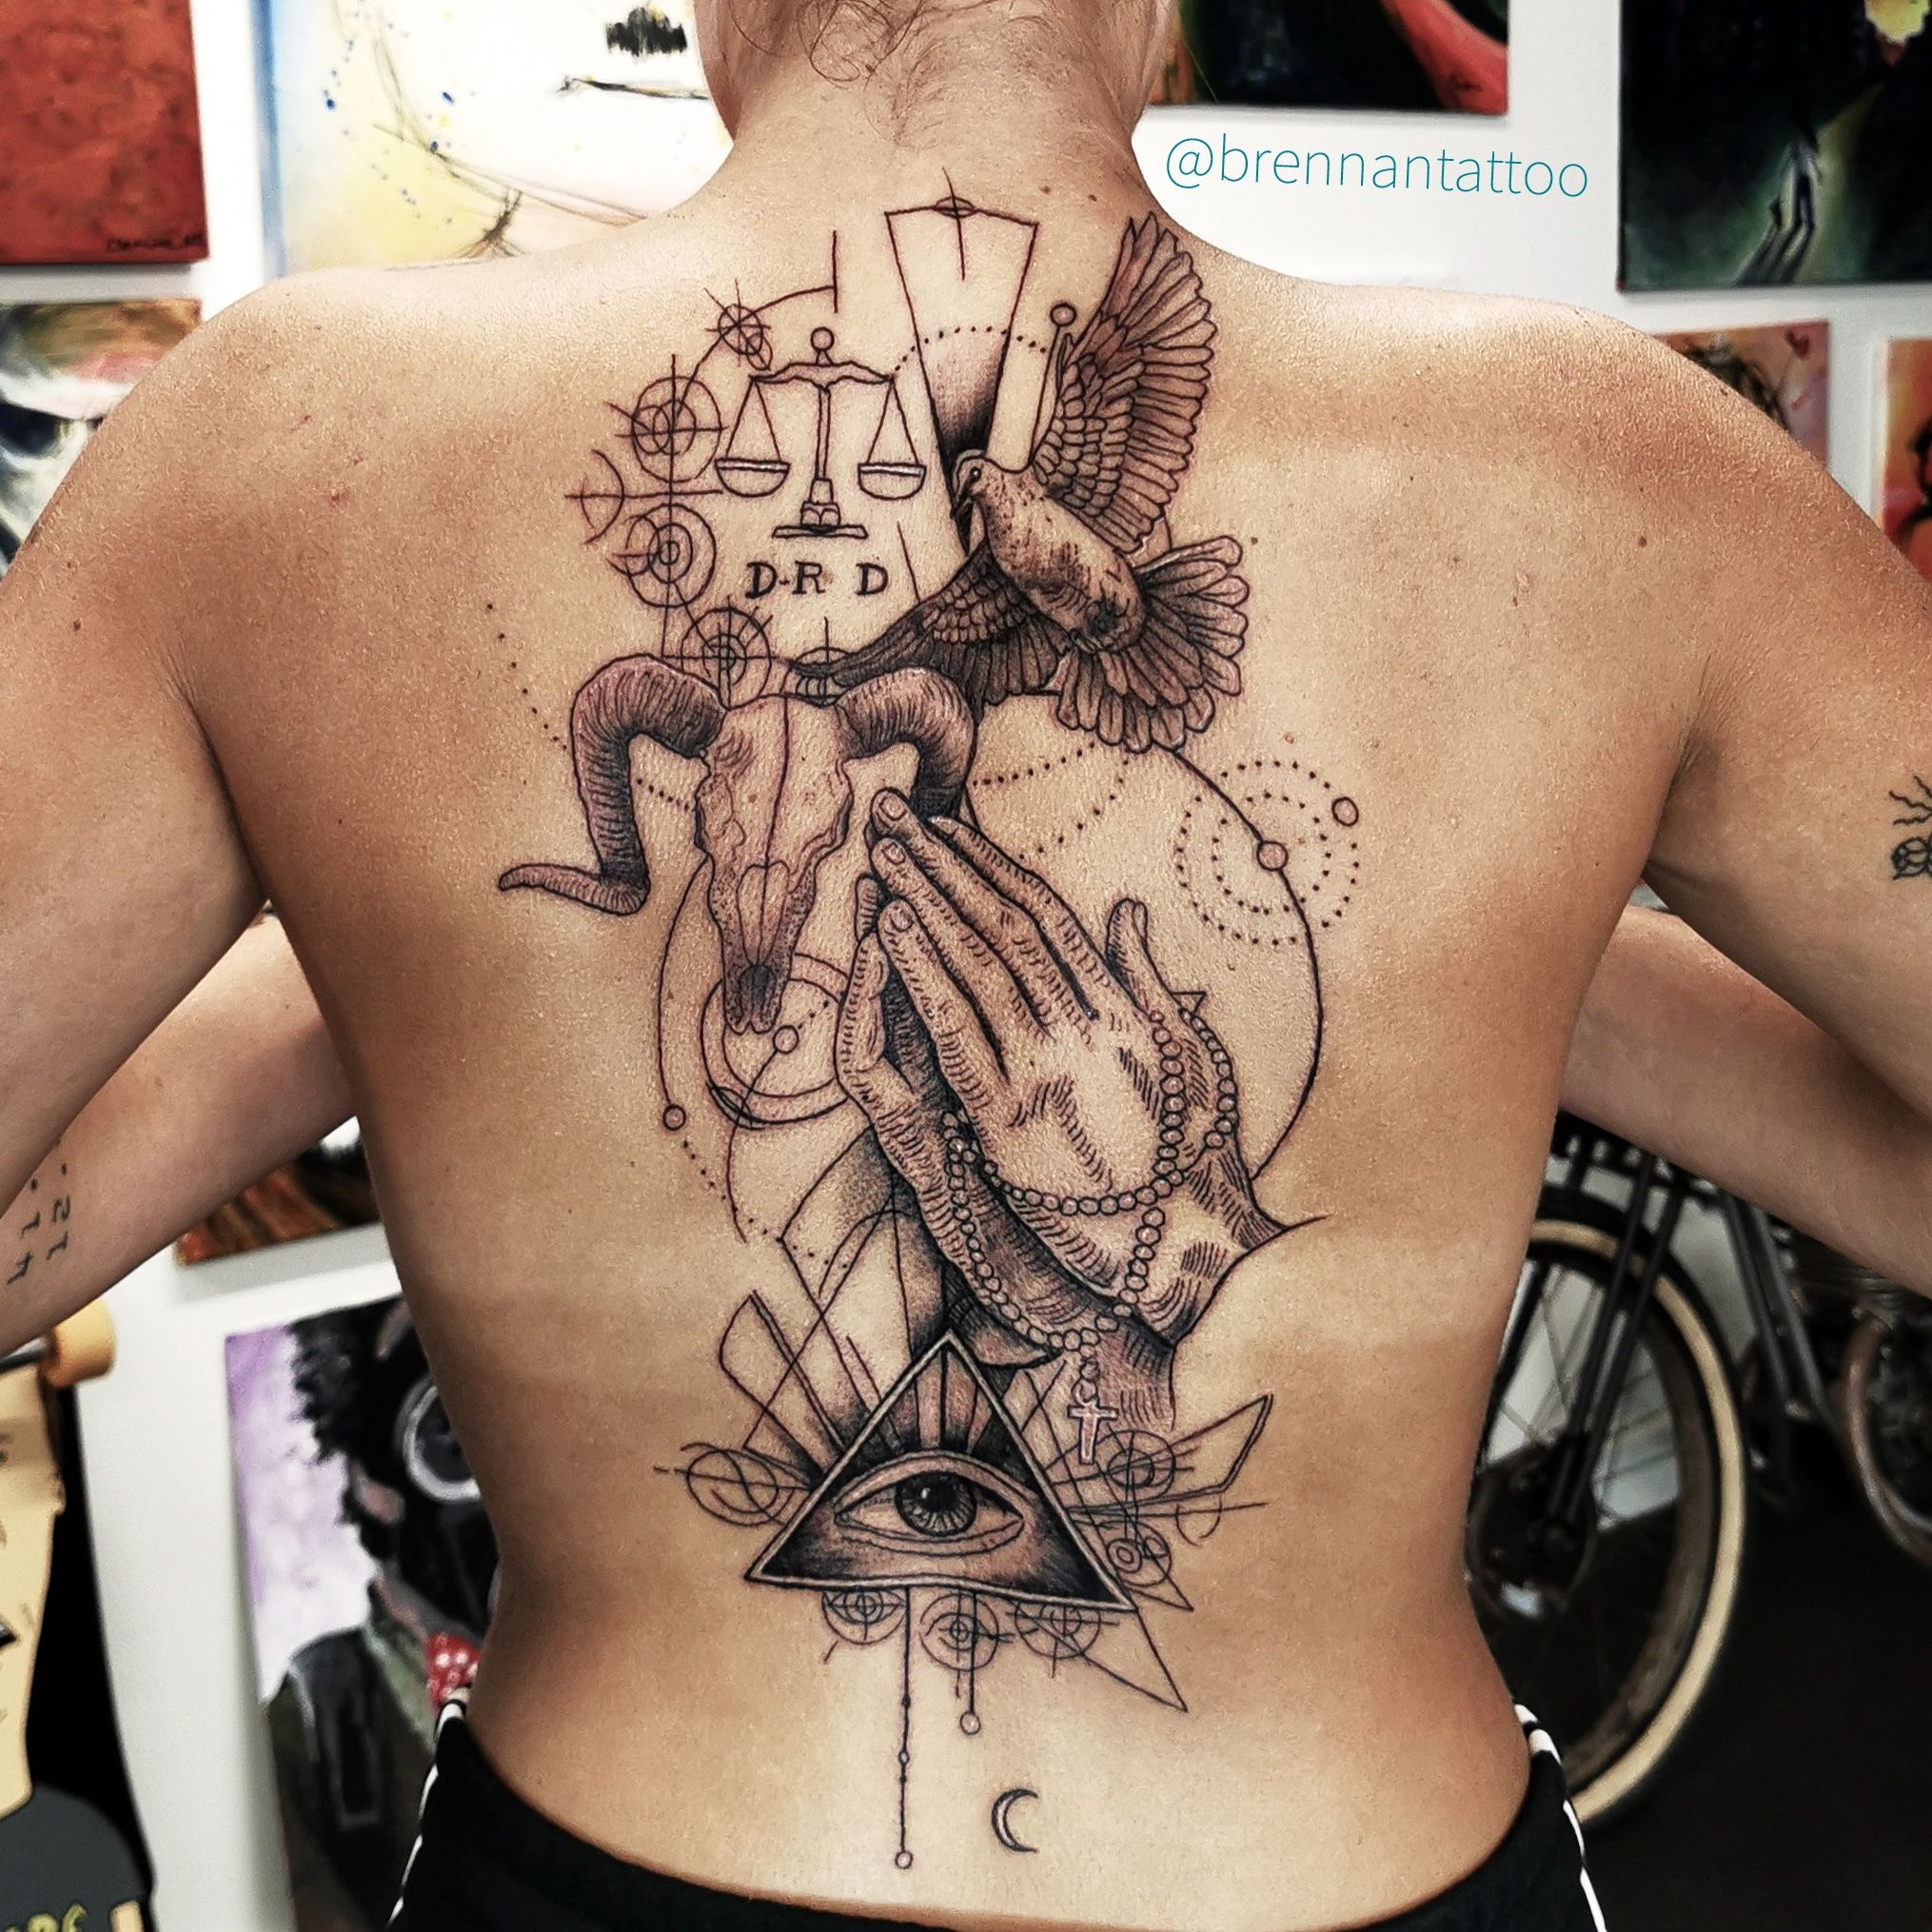 Tattoo Artists Recreate Leonardo da Vinci Masterpieces